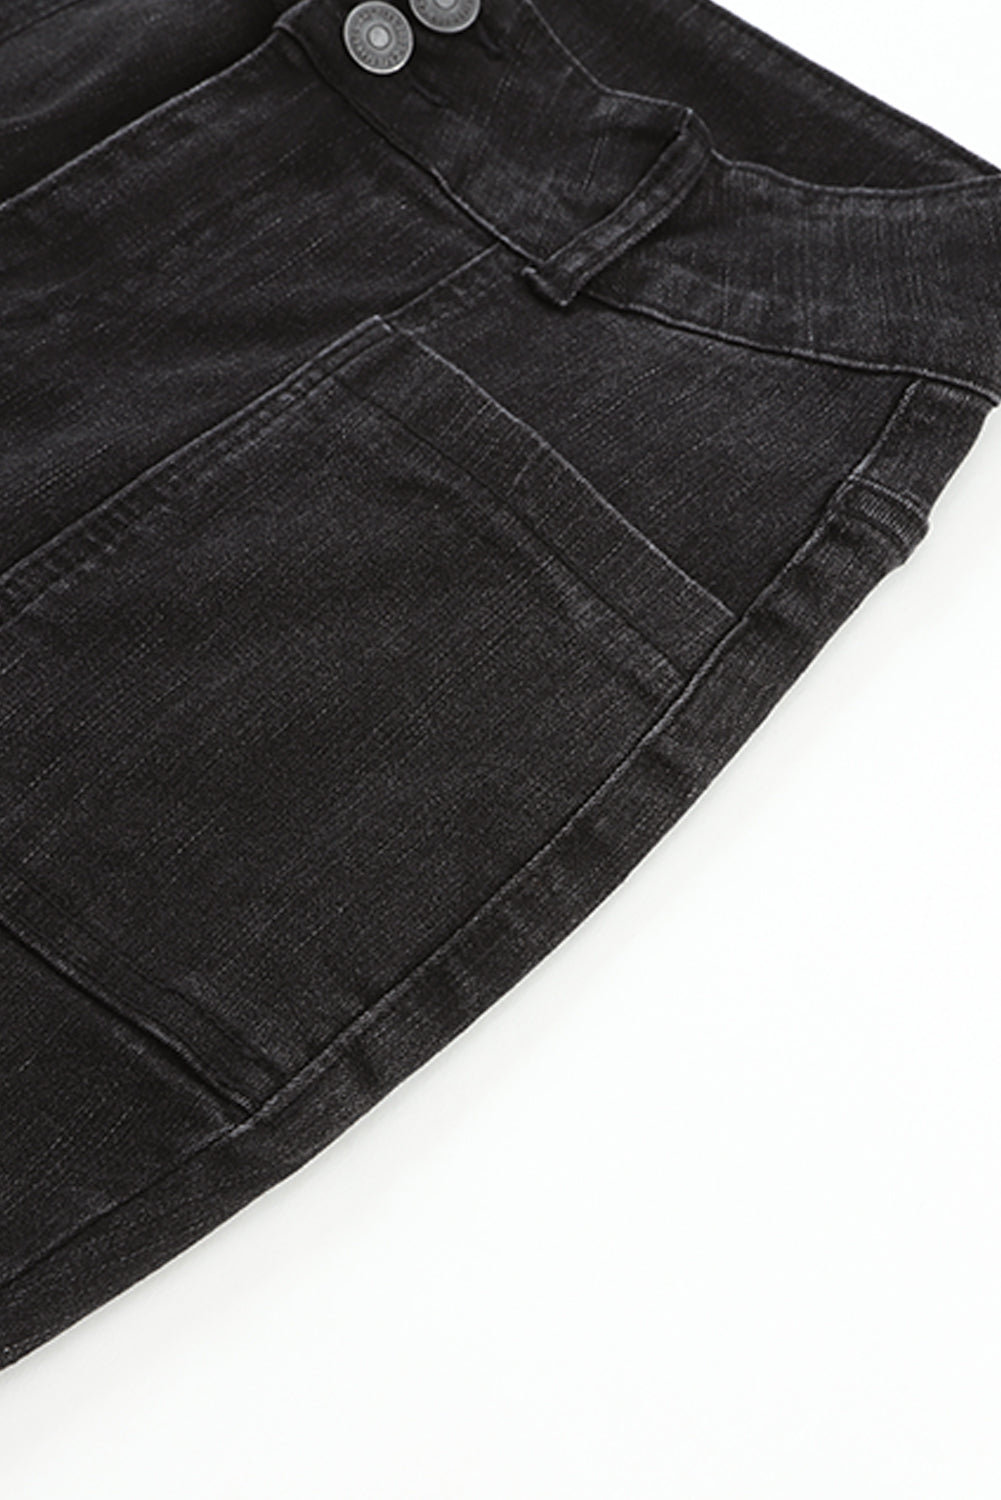 Black Exposed Seam Split Flare Jeans MPJ0129